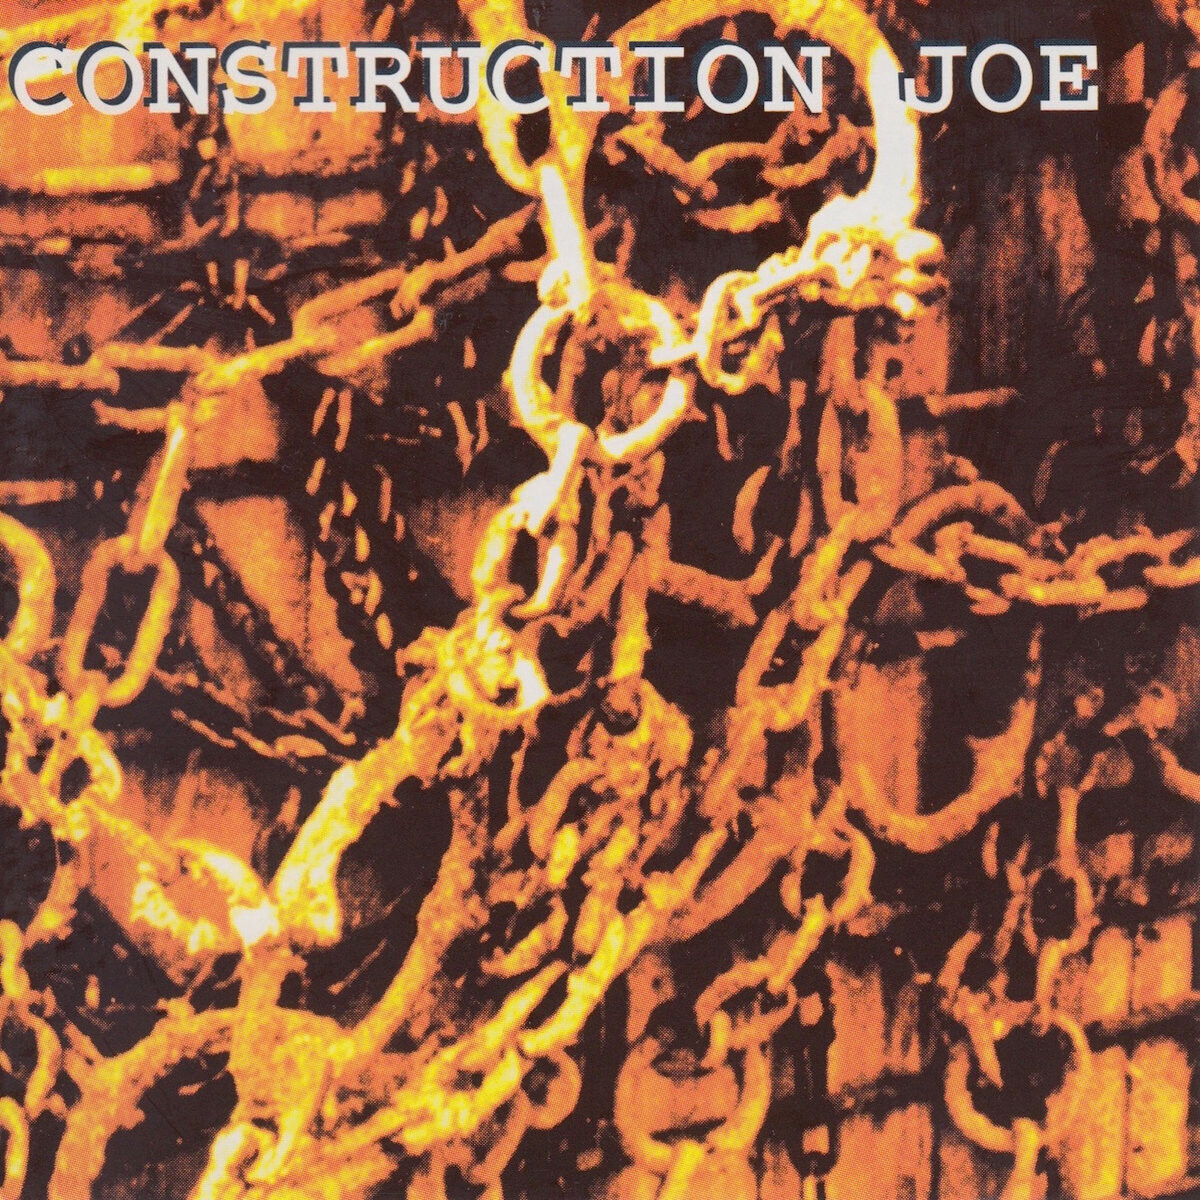 CD: "Construction Joe" by Construction Joe